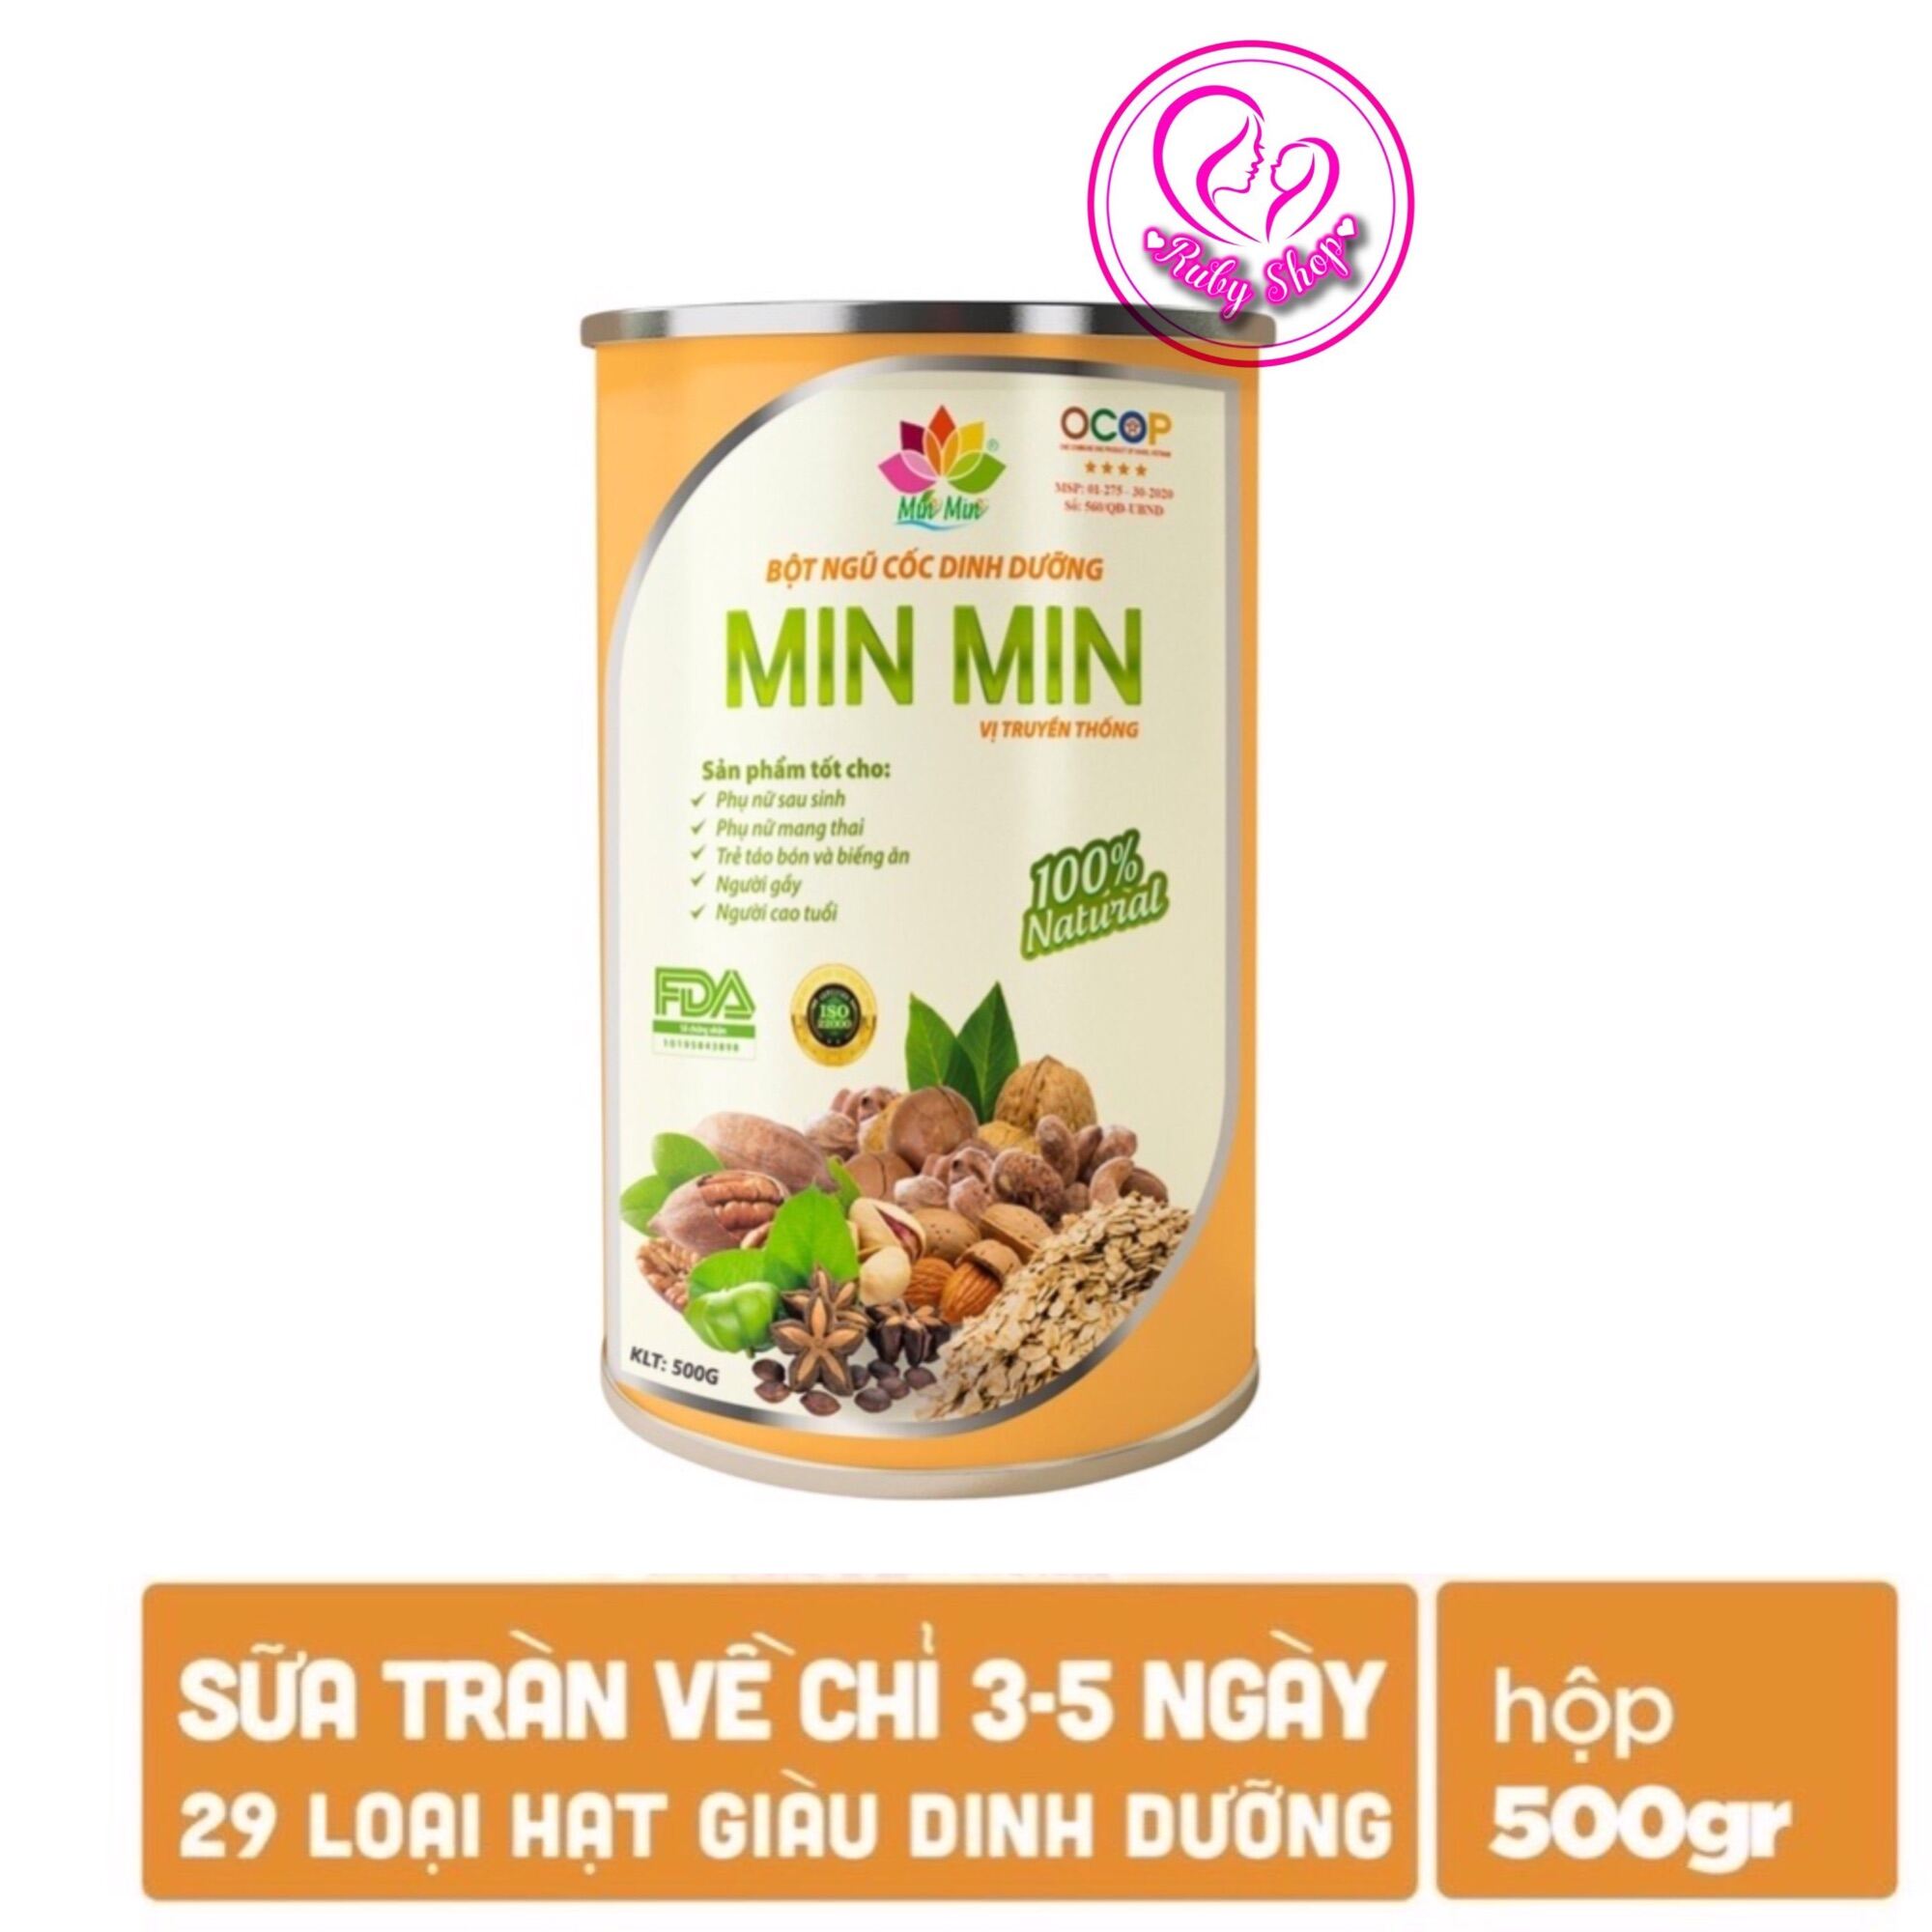 Ngũ cốc dinh dưỡng Min Min bổ sung dưỡng chất cho mẹ bầu và lợi sữa sau